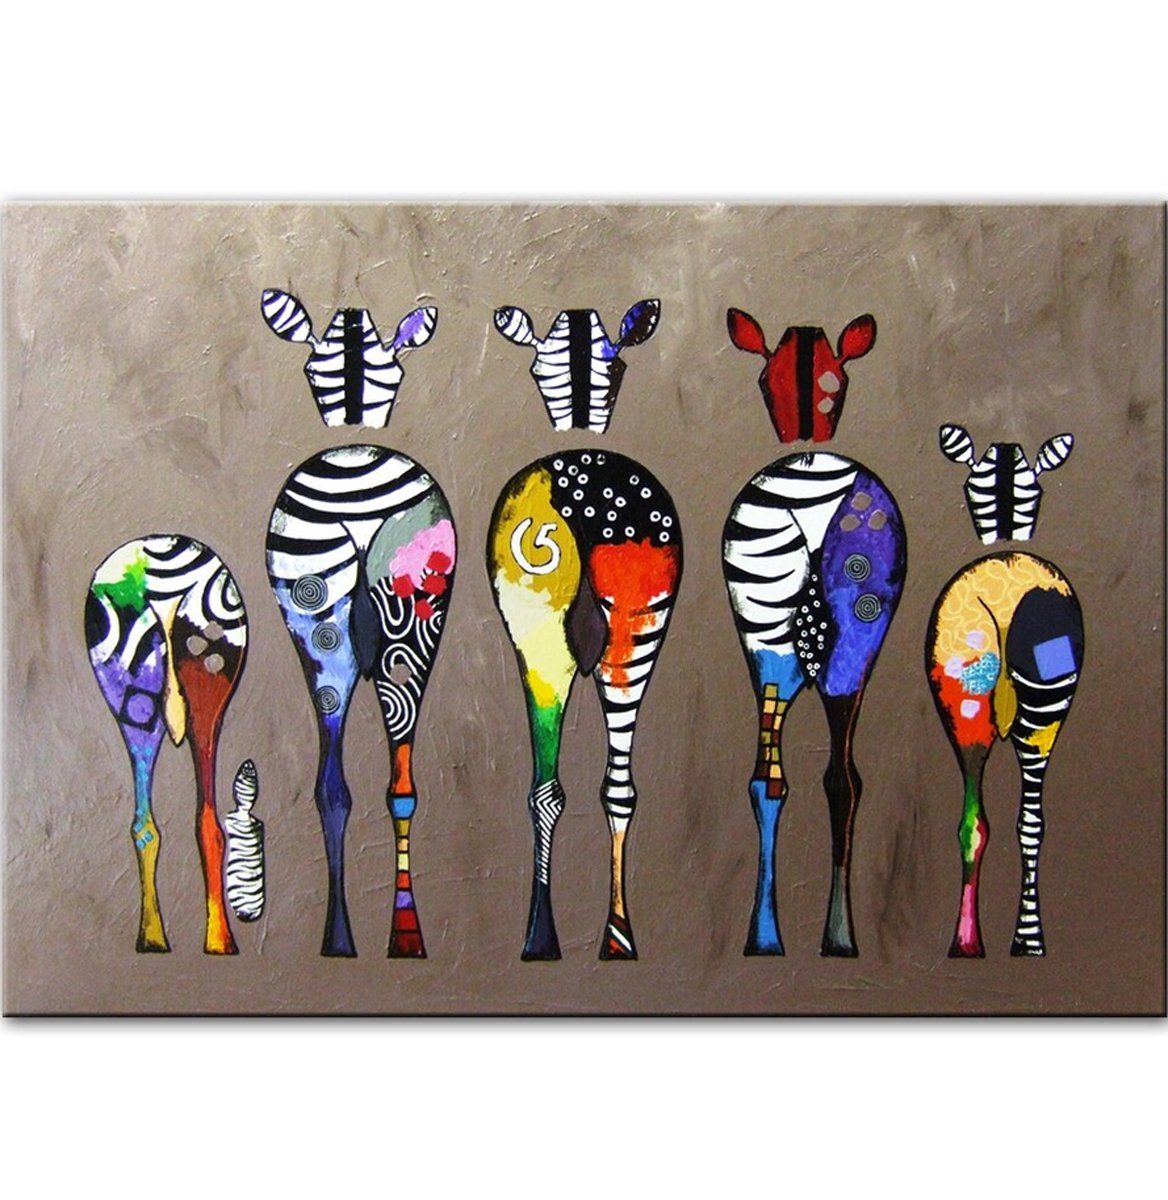 TPFLiving Kunstdruck (OHNE RAHMEN) Poster - Leinwand - Wandbild, Abstrakte bunte Zebras (Motiv in verschiedenen Größen), Farben: Leinwand bunt - Größe: 20x30cm